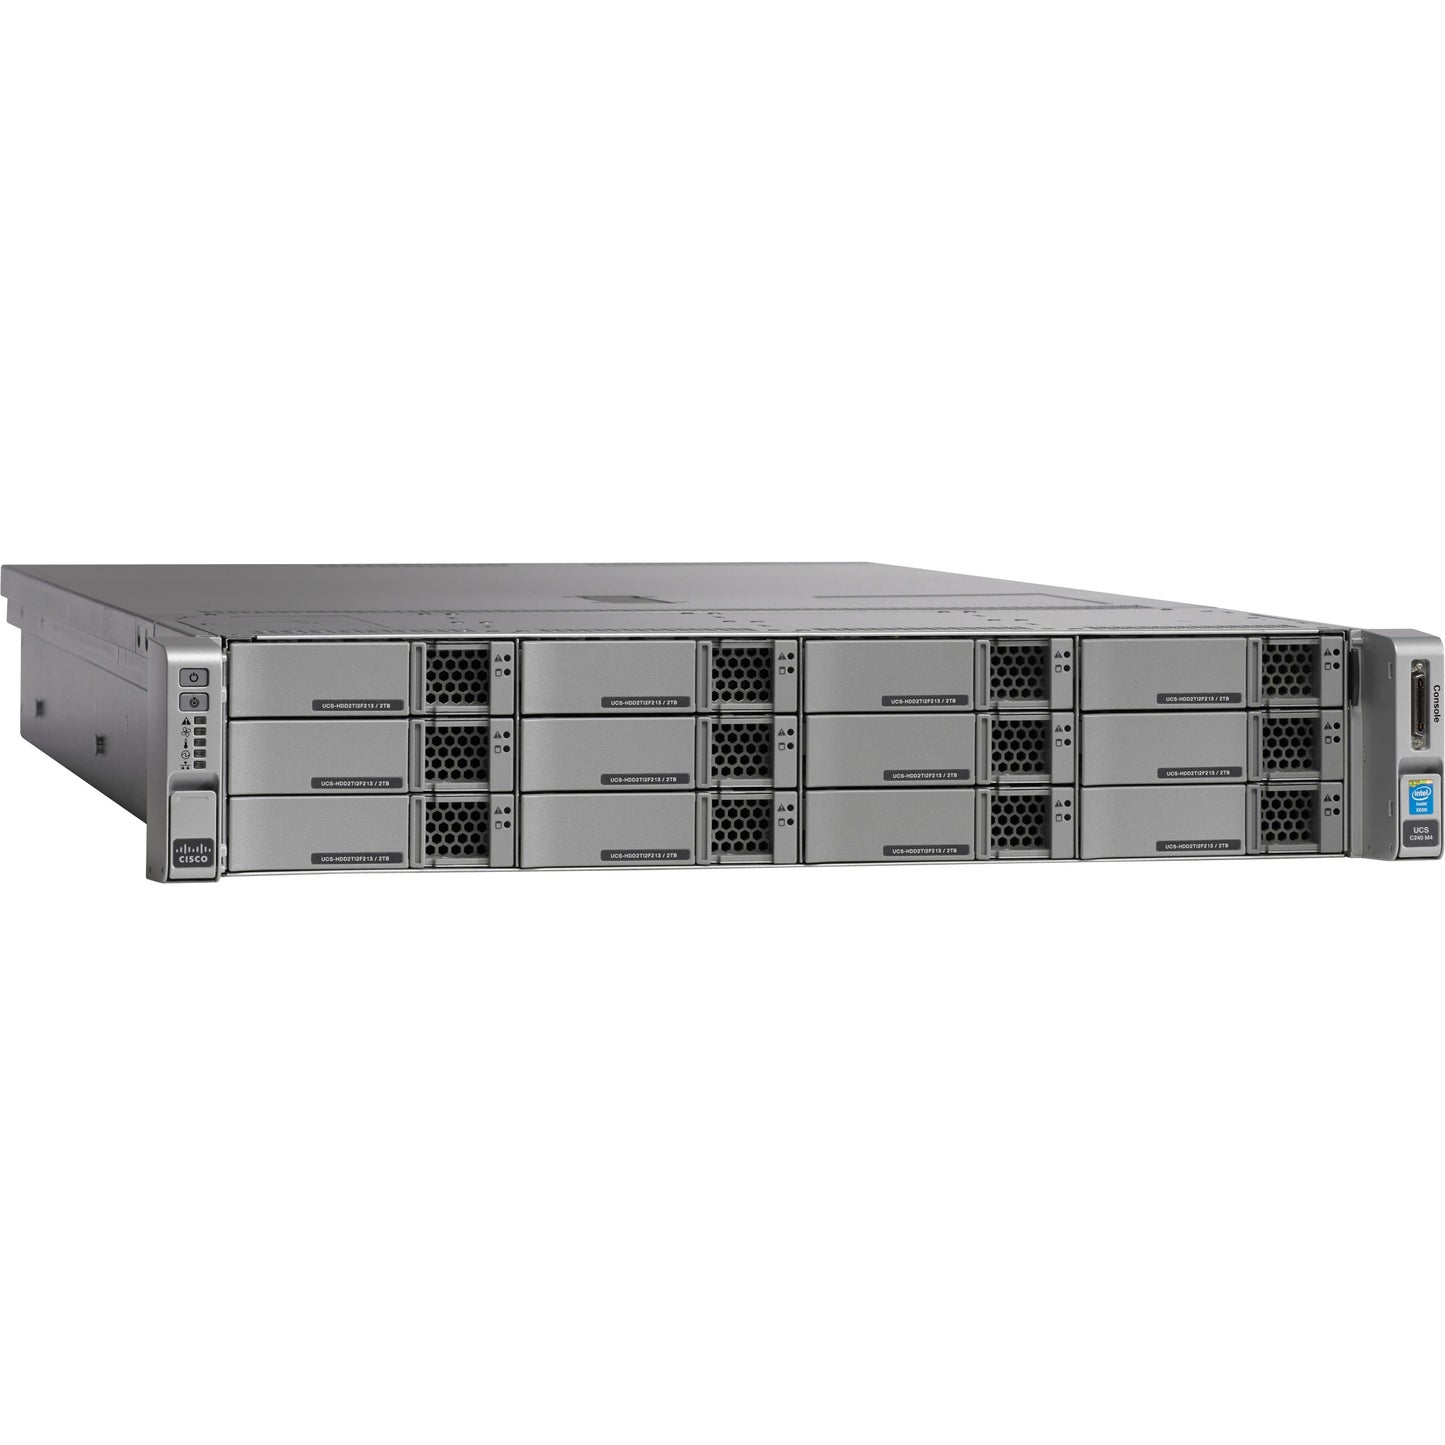 Cisco C240 M4 2U Rack Server - 2 x Intel Xeon E5-2630 v3 2.40 GHz - 128 GB RAM - 12Gb/s SAS Serial ATA Controller